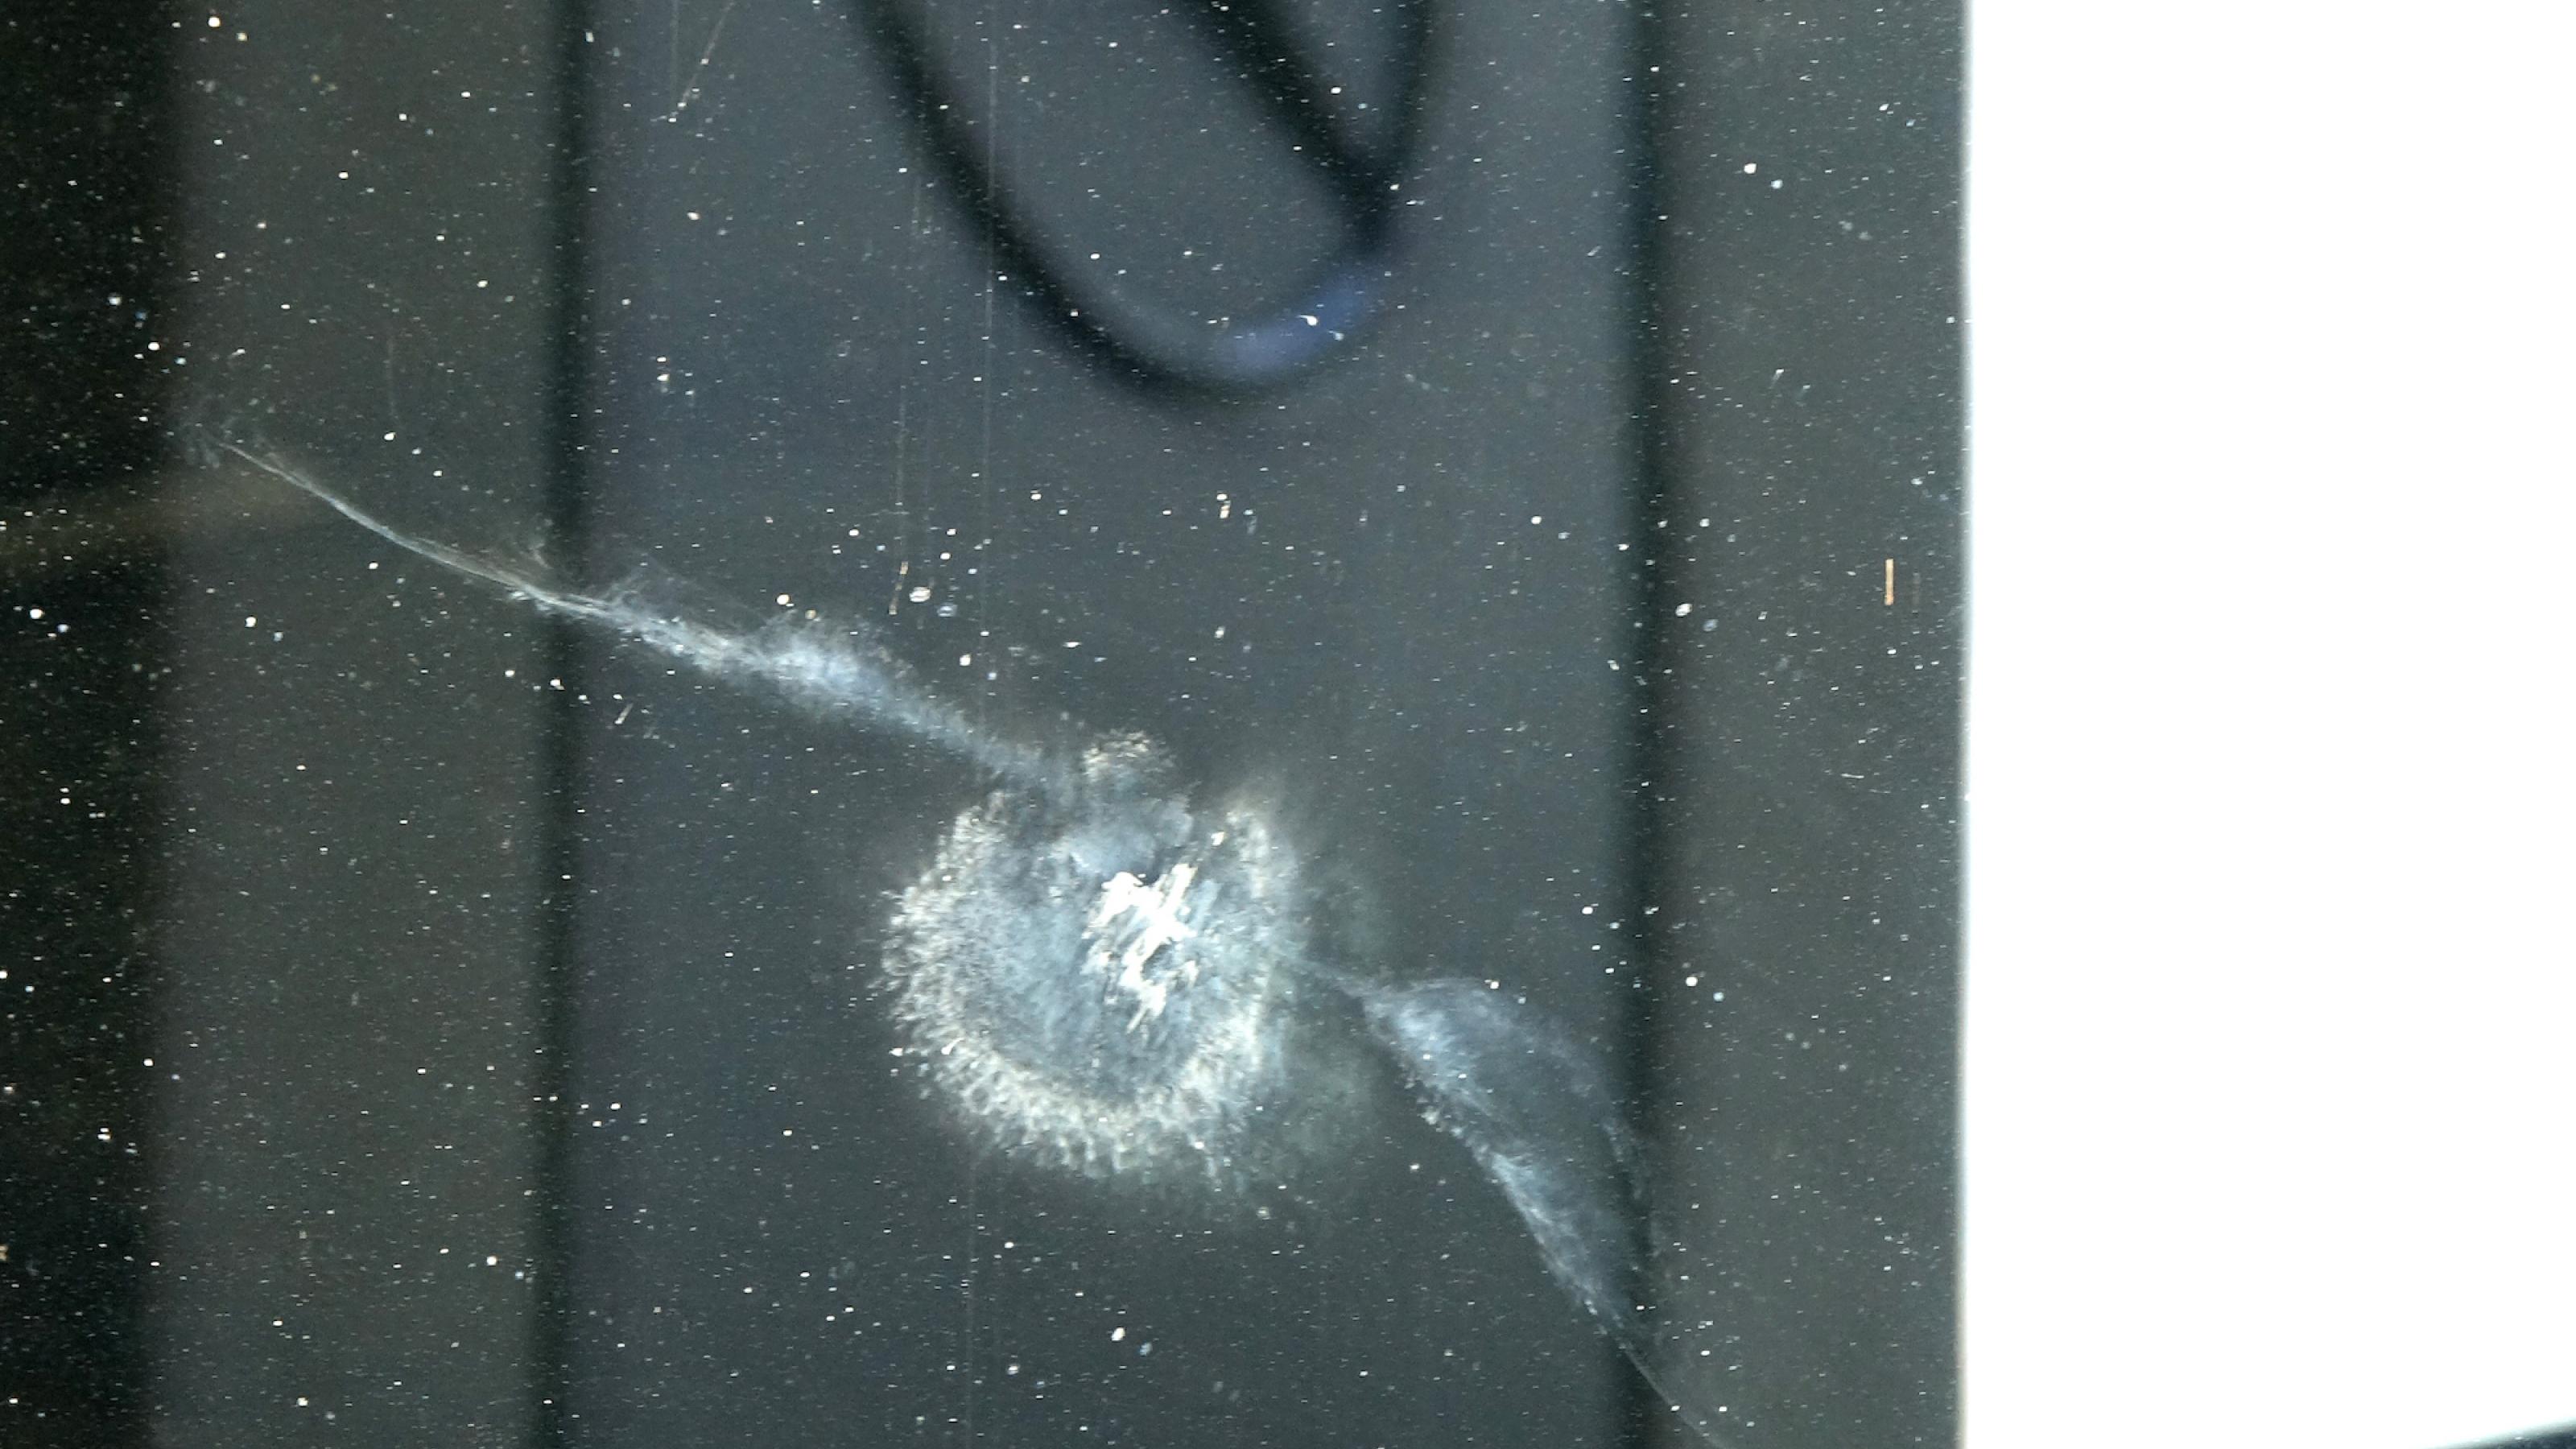 Auf dem Bild ist der Abdruck eines Vogels an der Glasfront des Flughafens BER zu sehen, der entsteht, wenn das Tier mit der Scheibe kollidiert. Im Gebäude am Hintergrund als Werbung ein großer Mercedesstern.